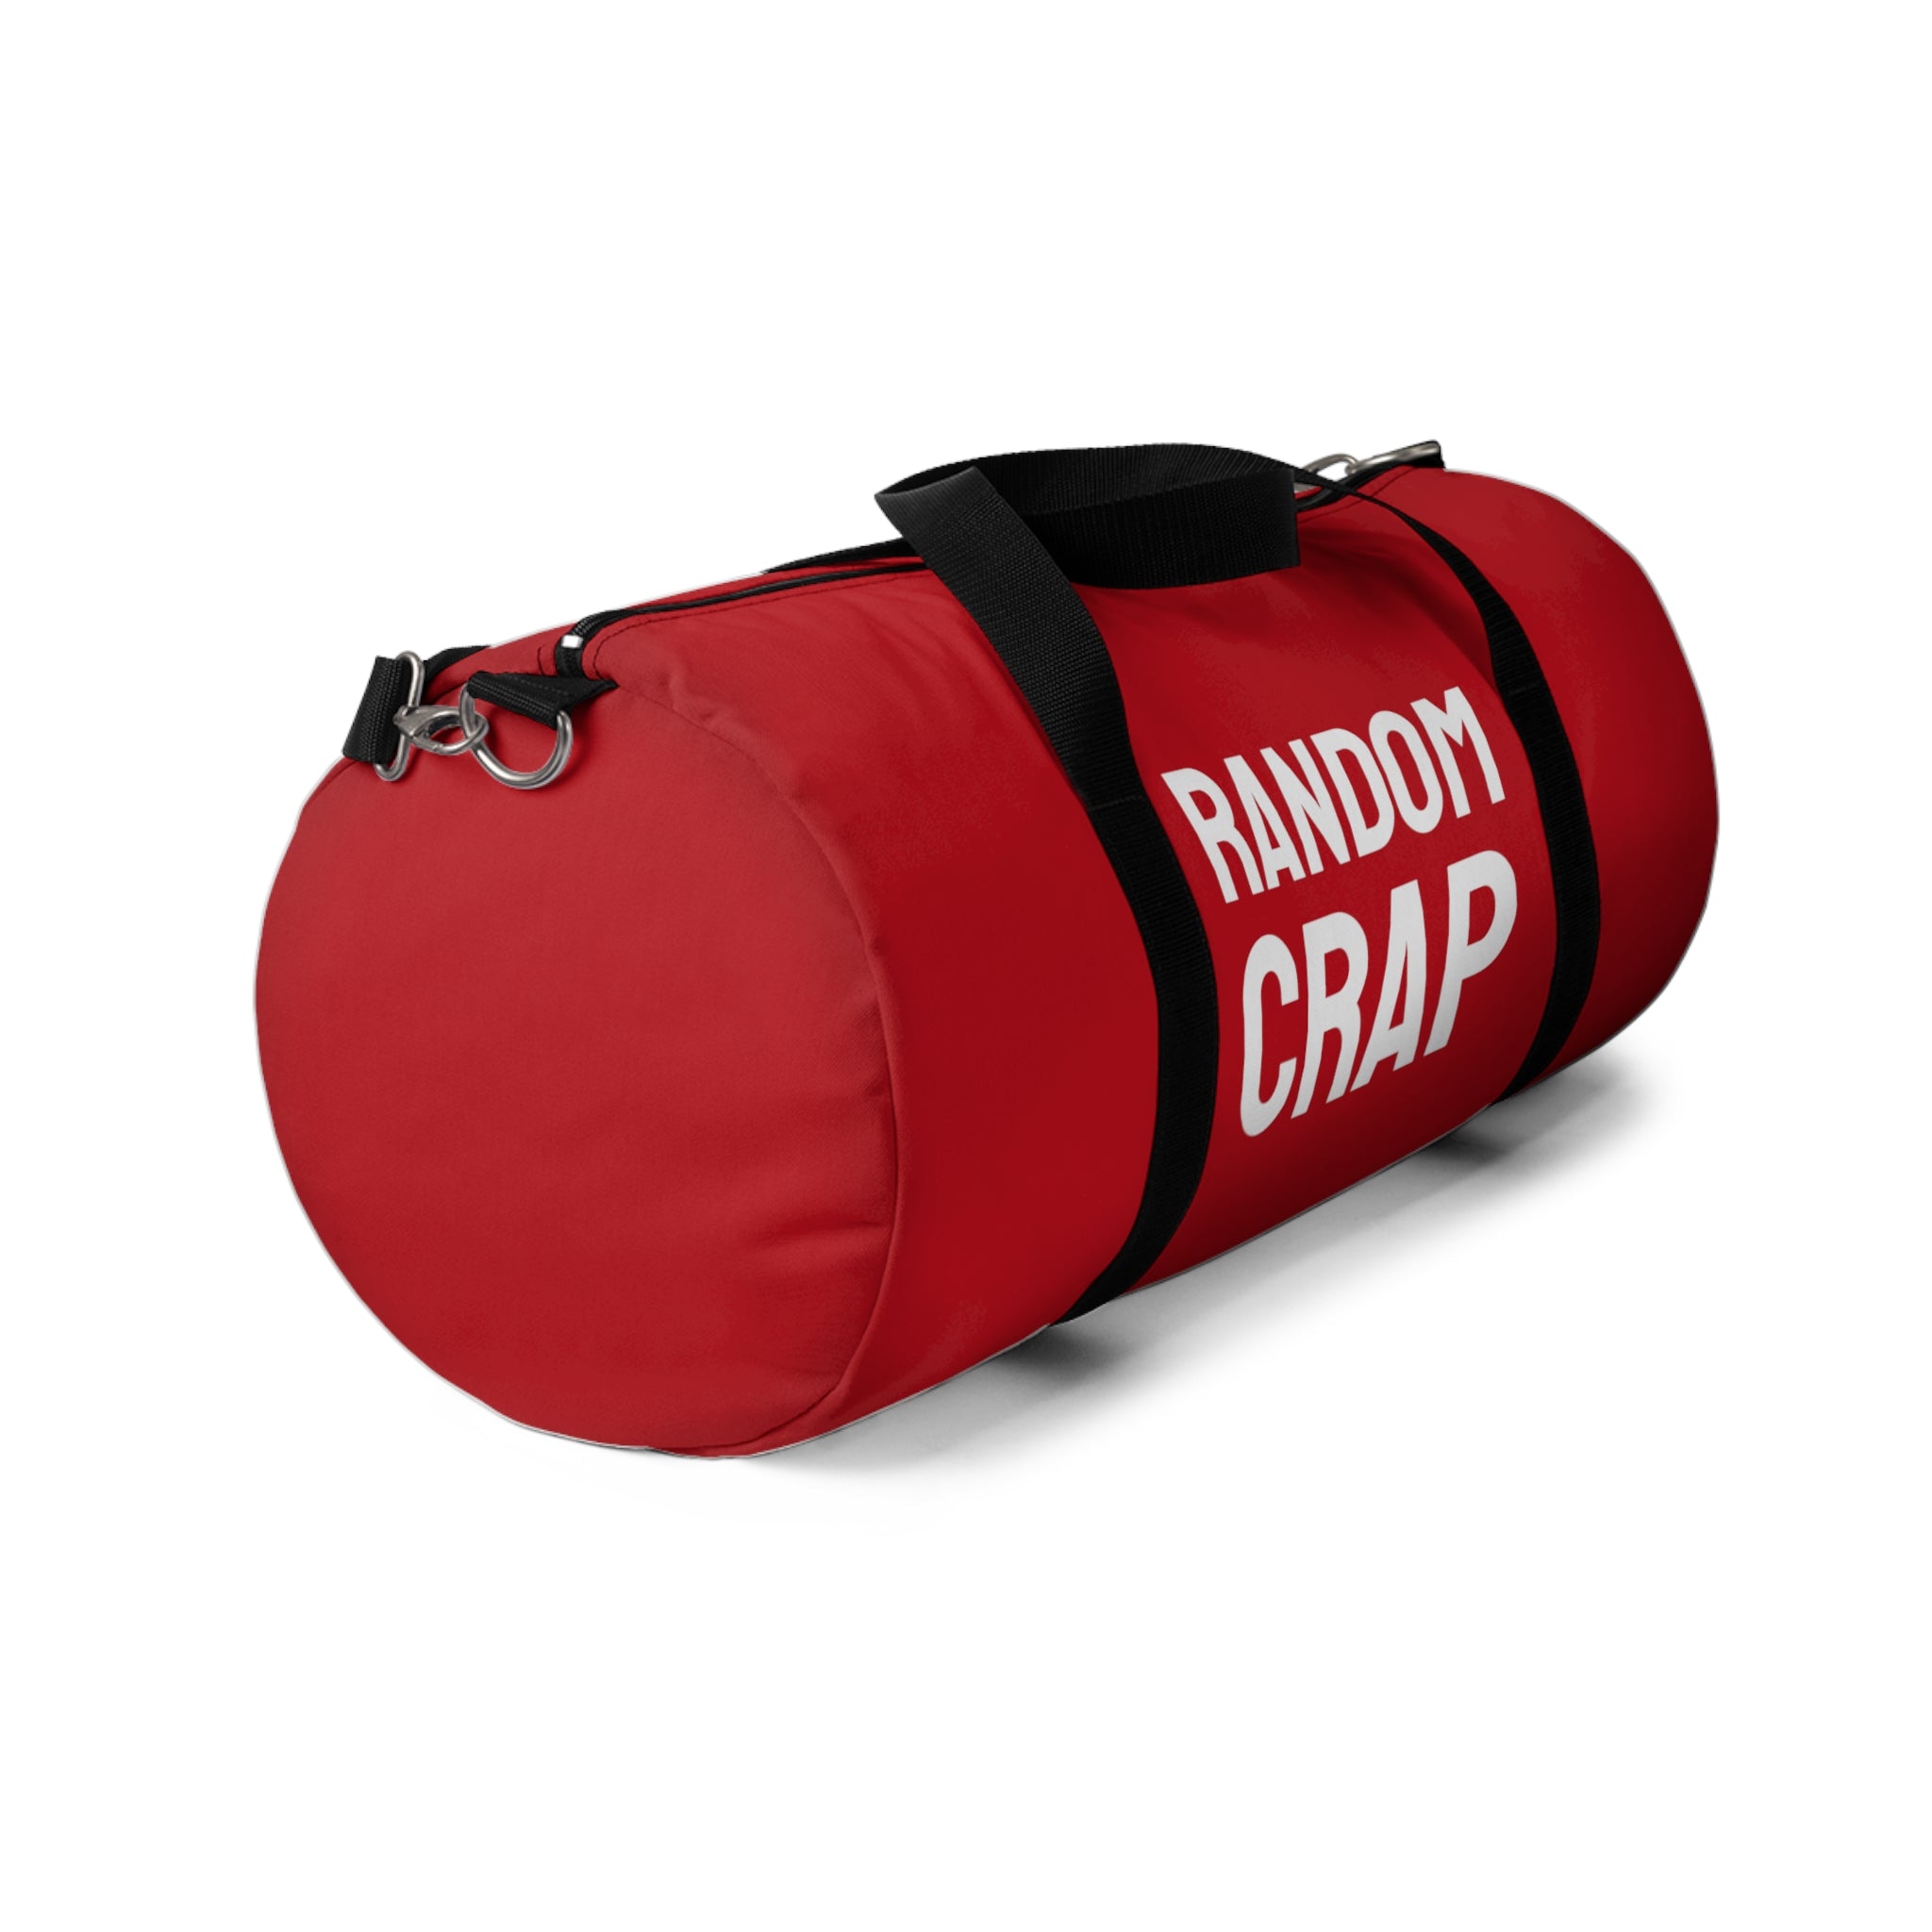 Random crap Duffle Bag (Red)